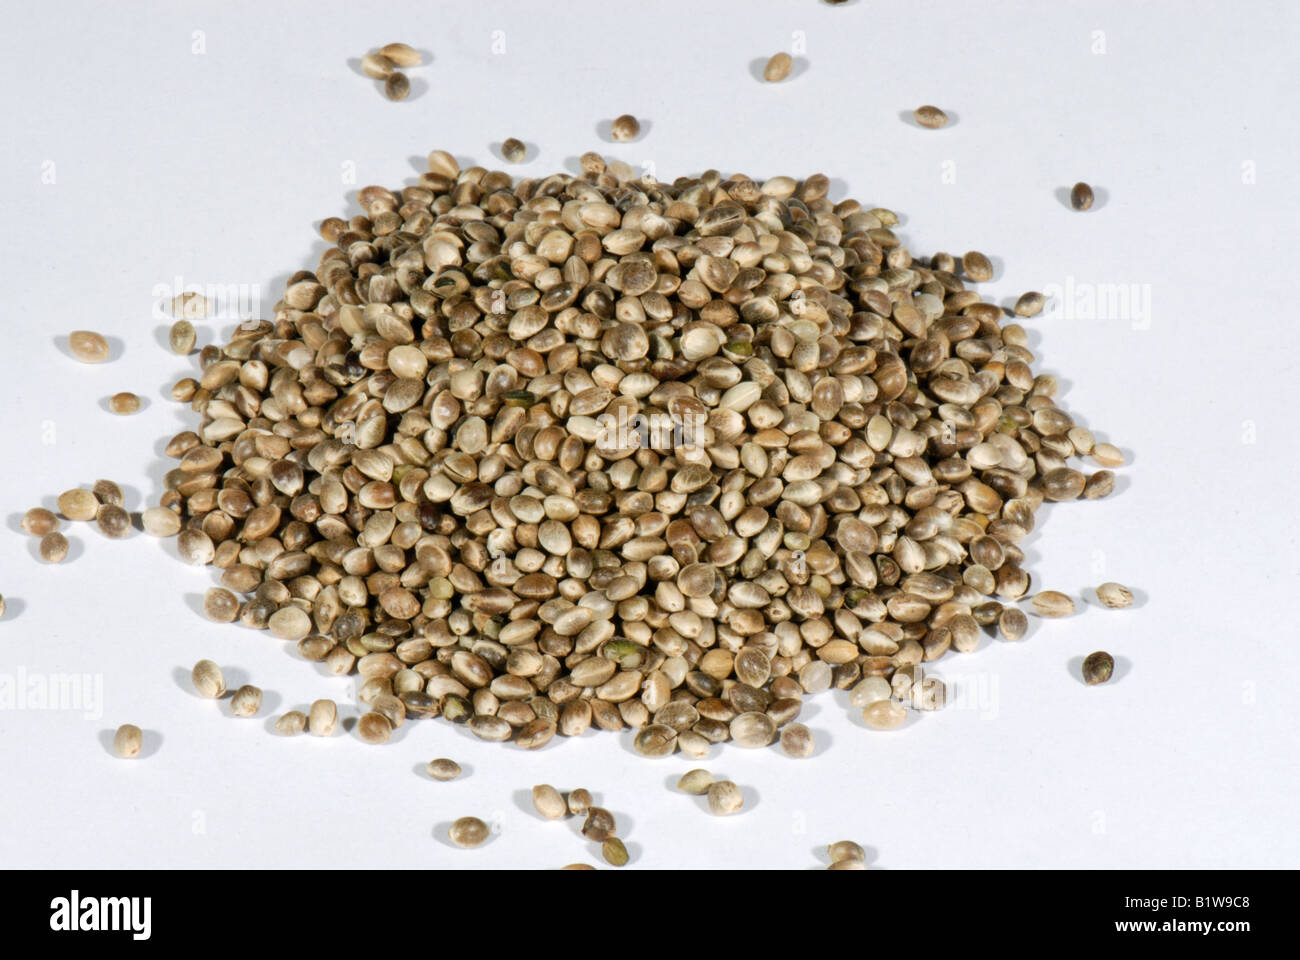 Las semillas de cáñamo Cannabis sativa orgánica cocina igredient vendidos en las tiendas de alimentos dietéticos Foto de stock